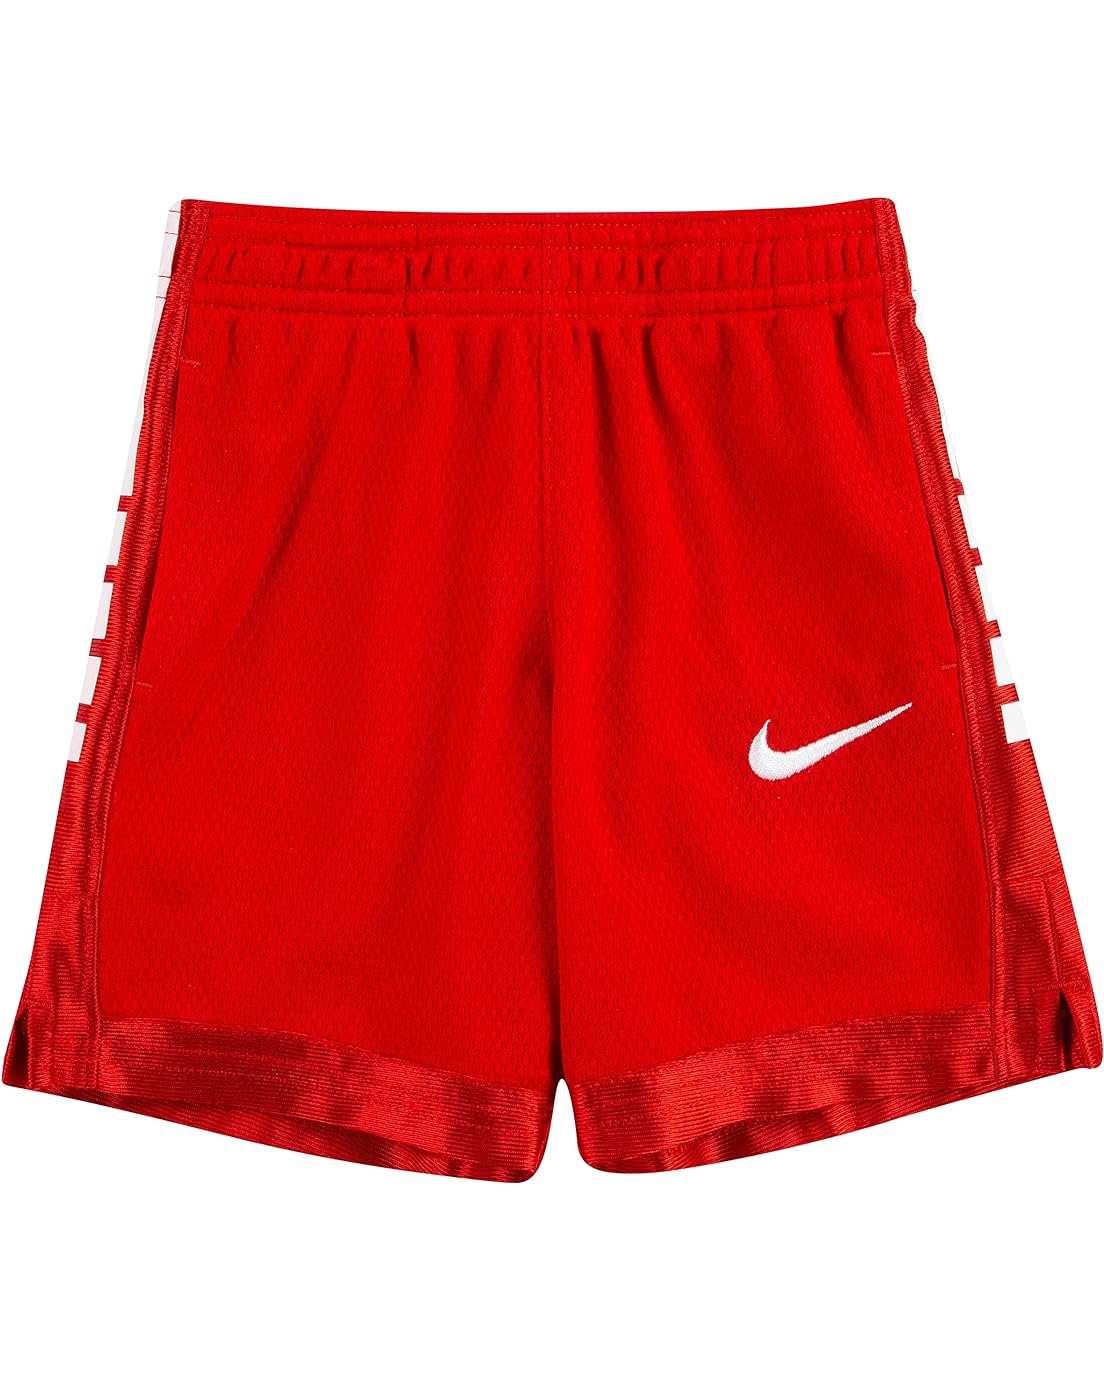 Nike Kids Dri-FIT Elite Basketball Shorts (Toddler)